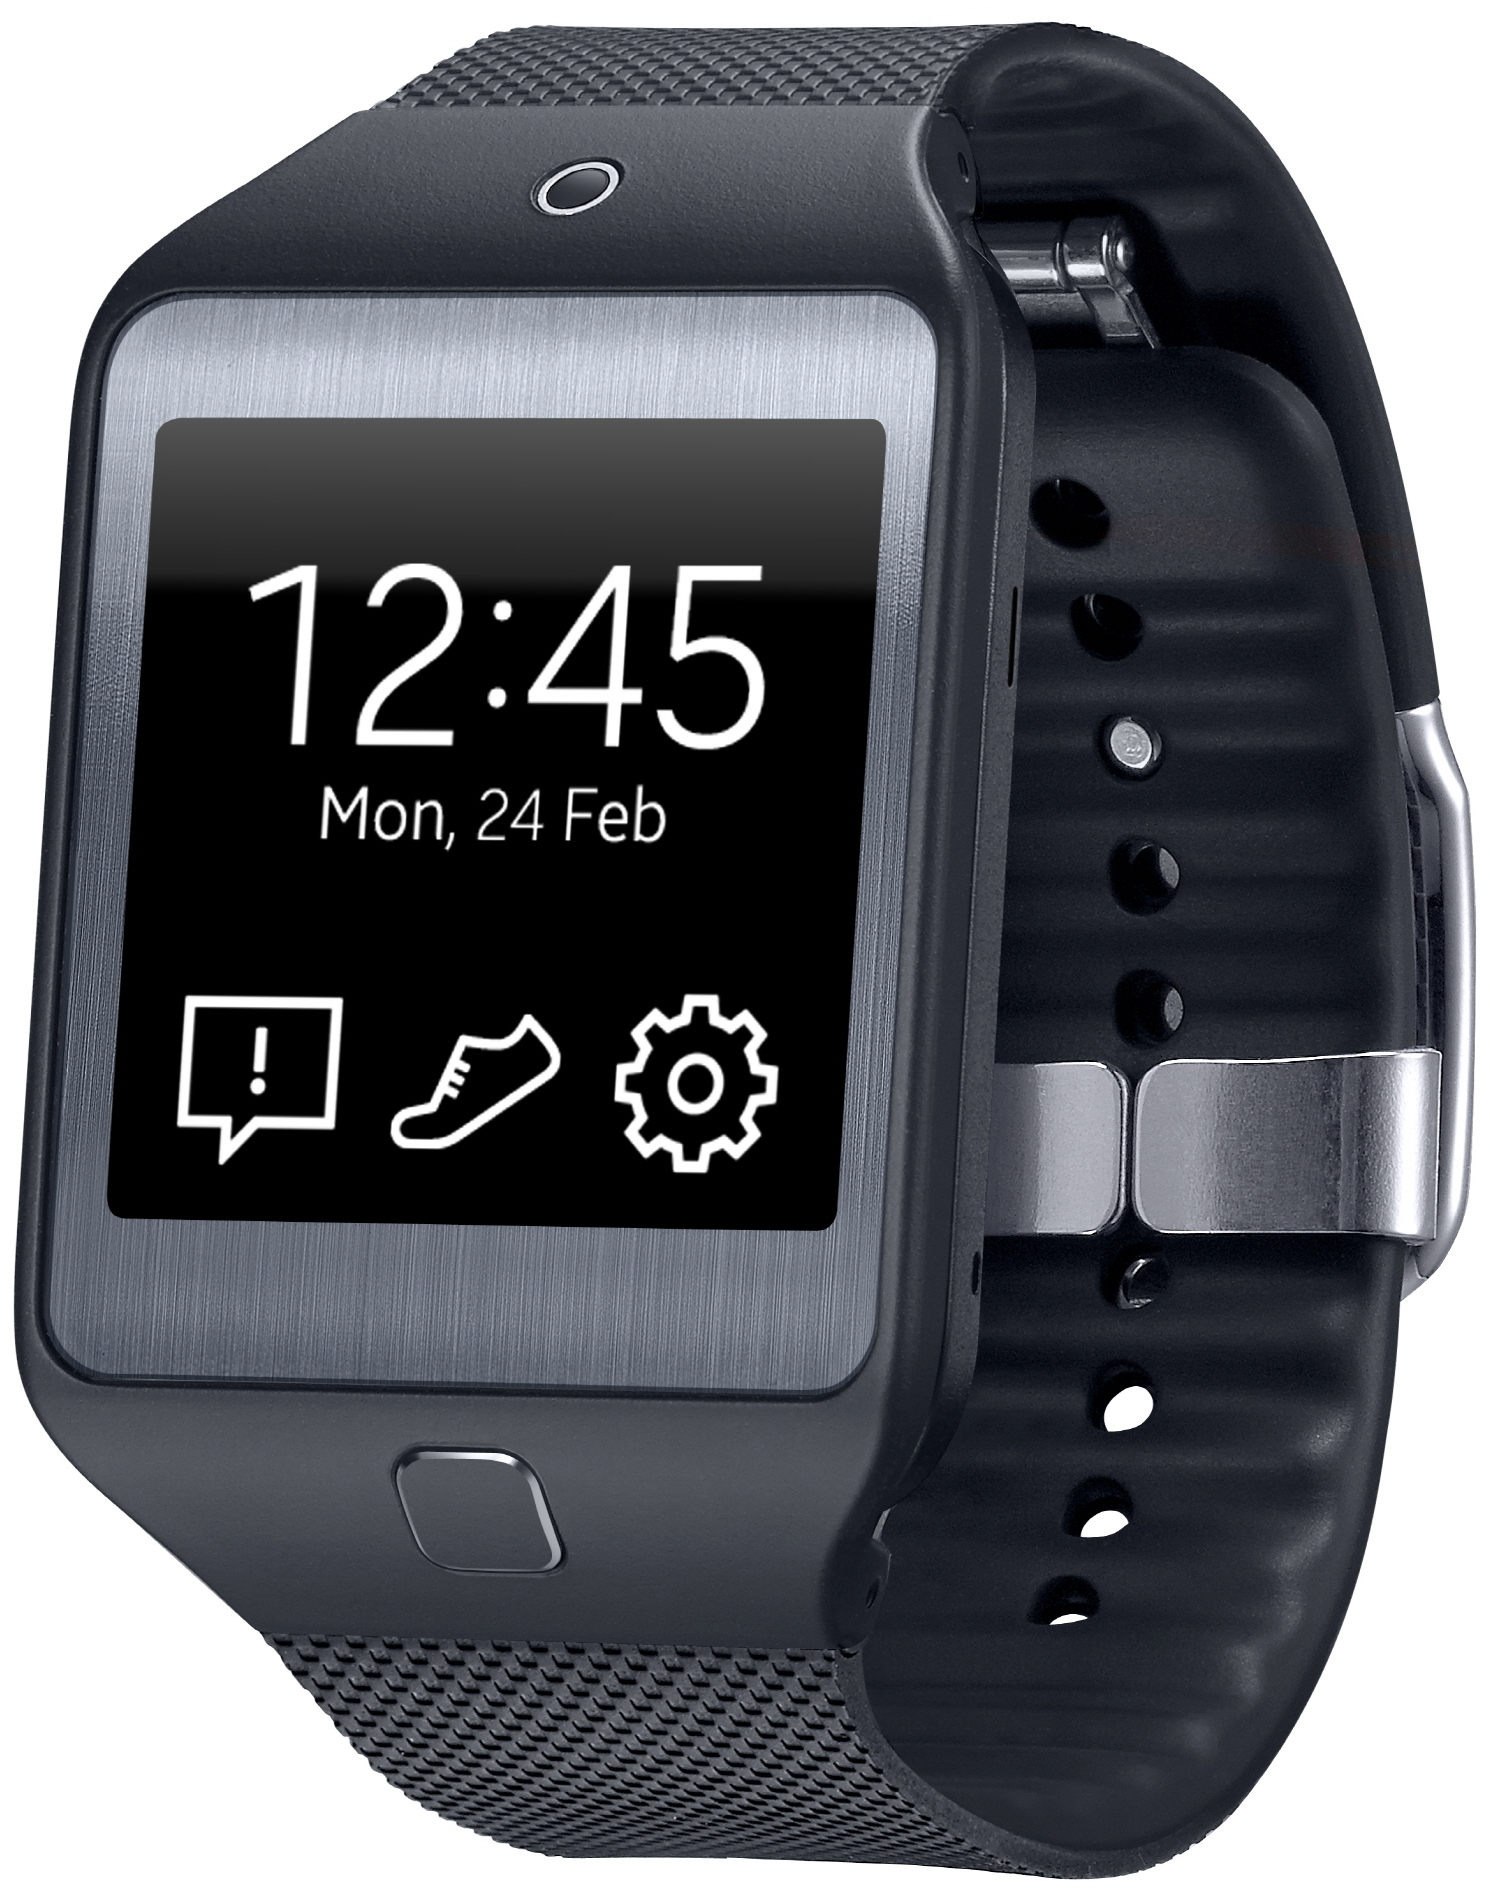 Samsung Gear 2 Neo : caractéristiques, prix et test de la smartwatch